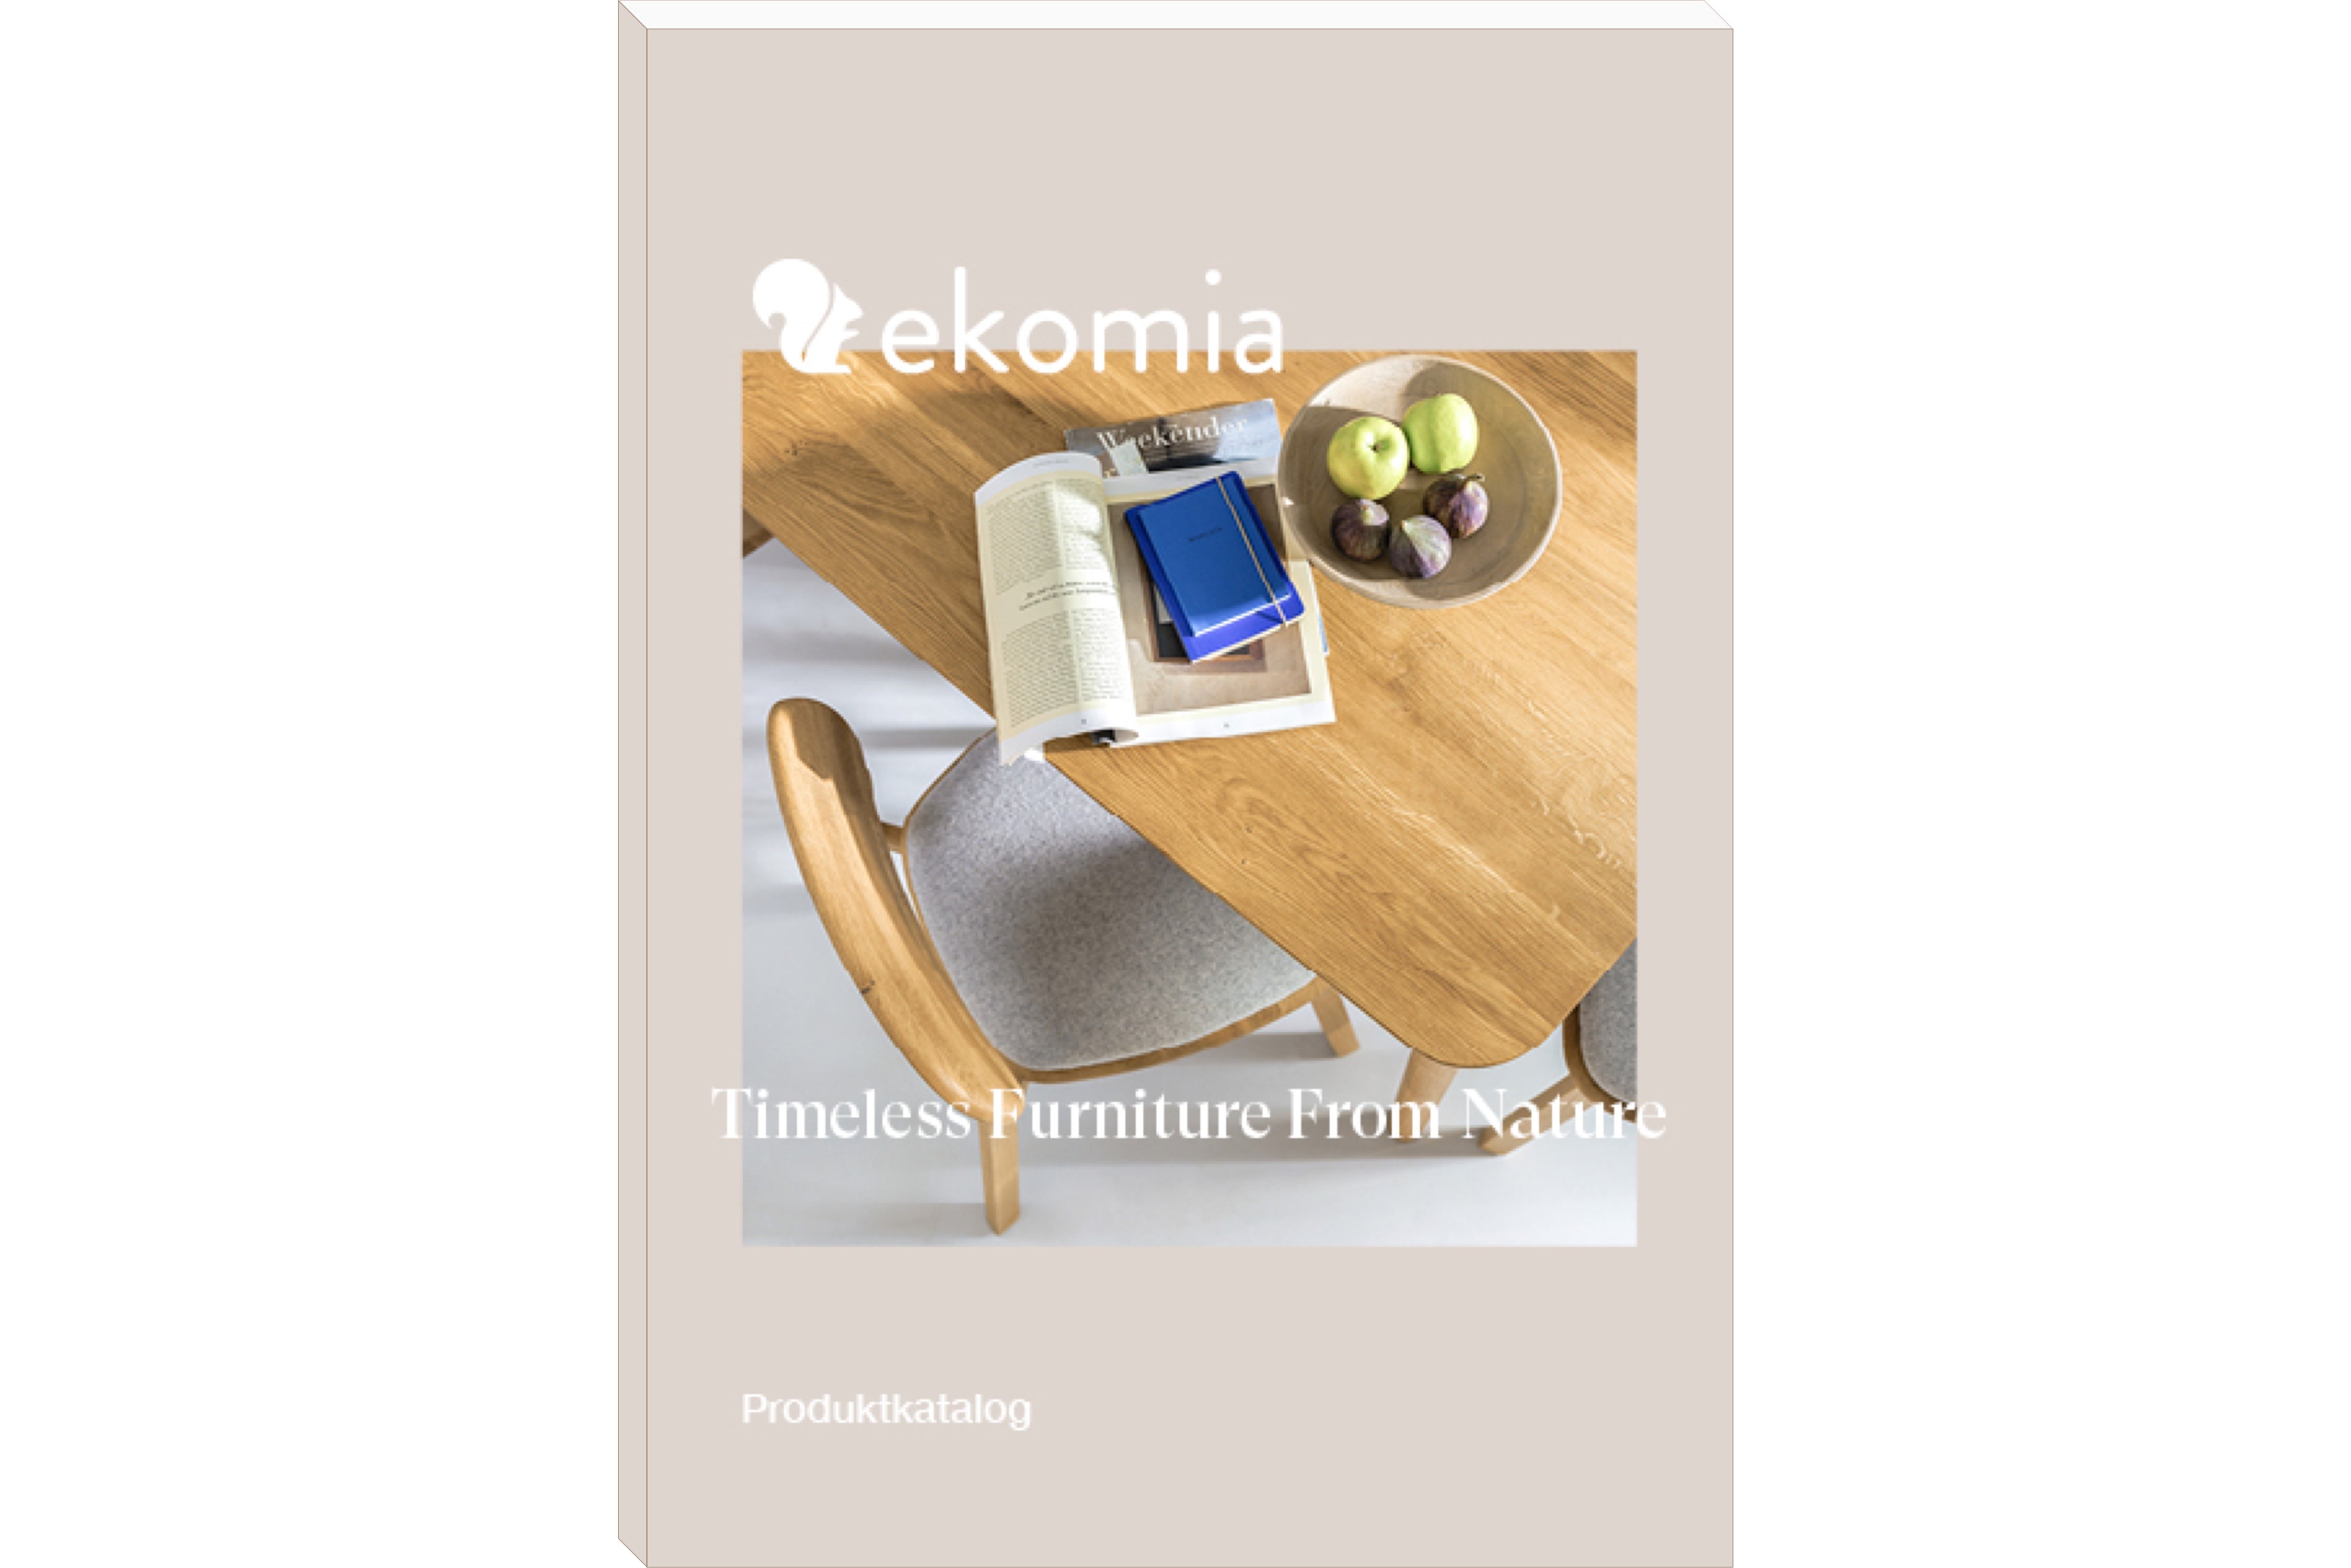 Der kostenlose ekomia Katalog mit allen Kollektionen im Überblick